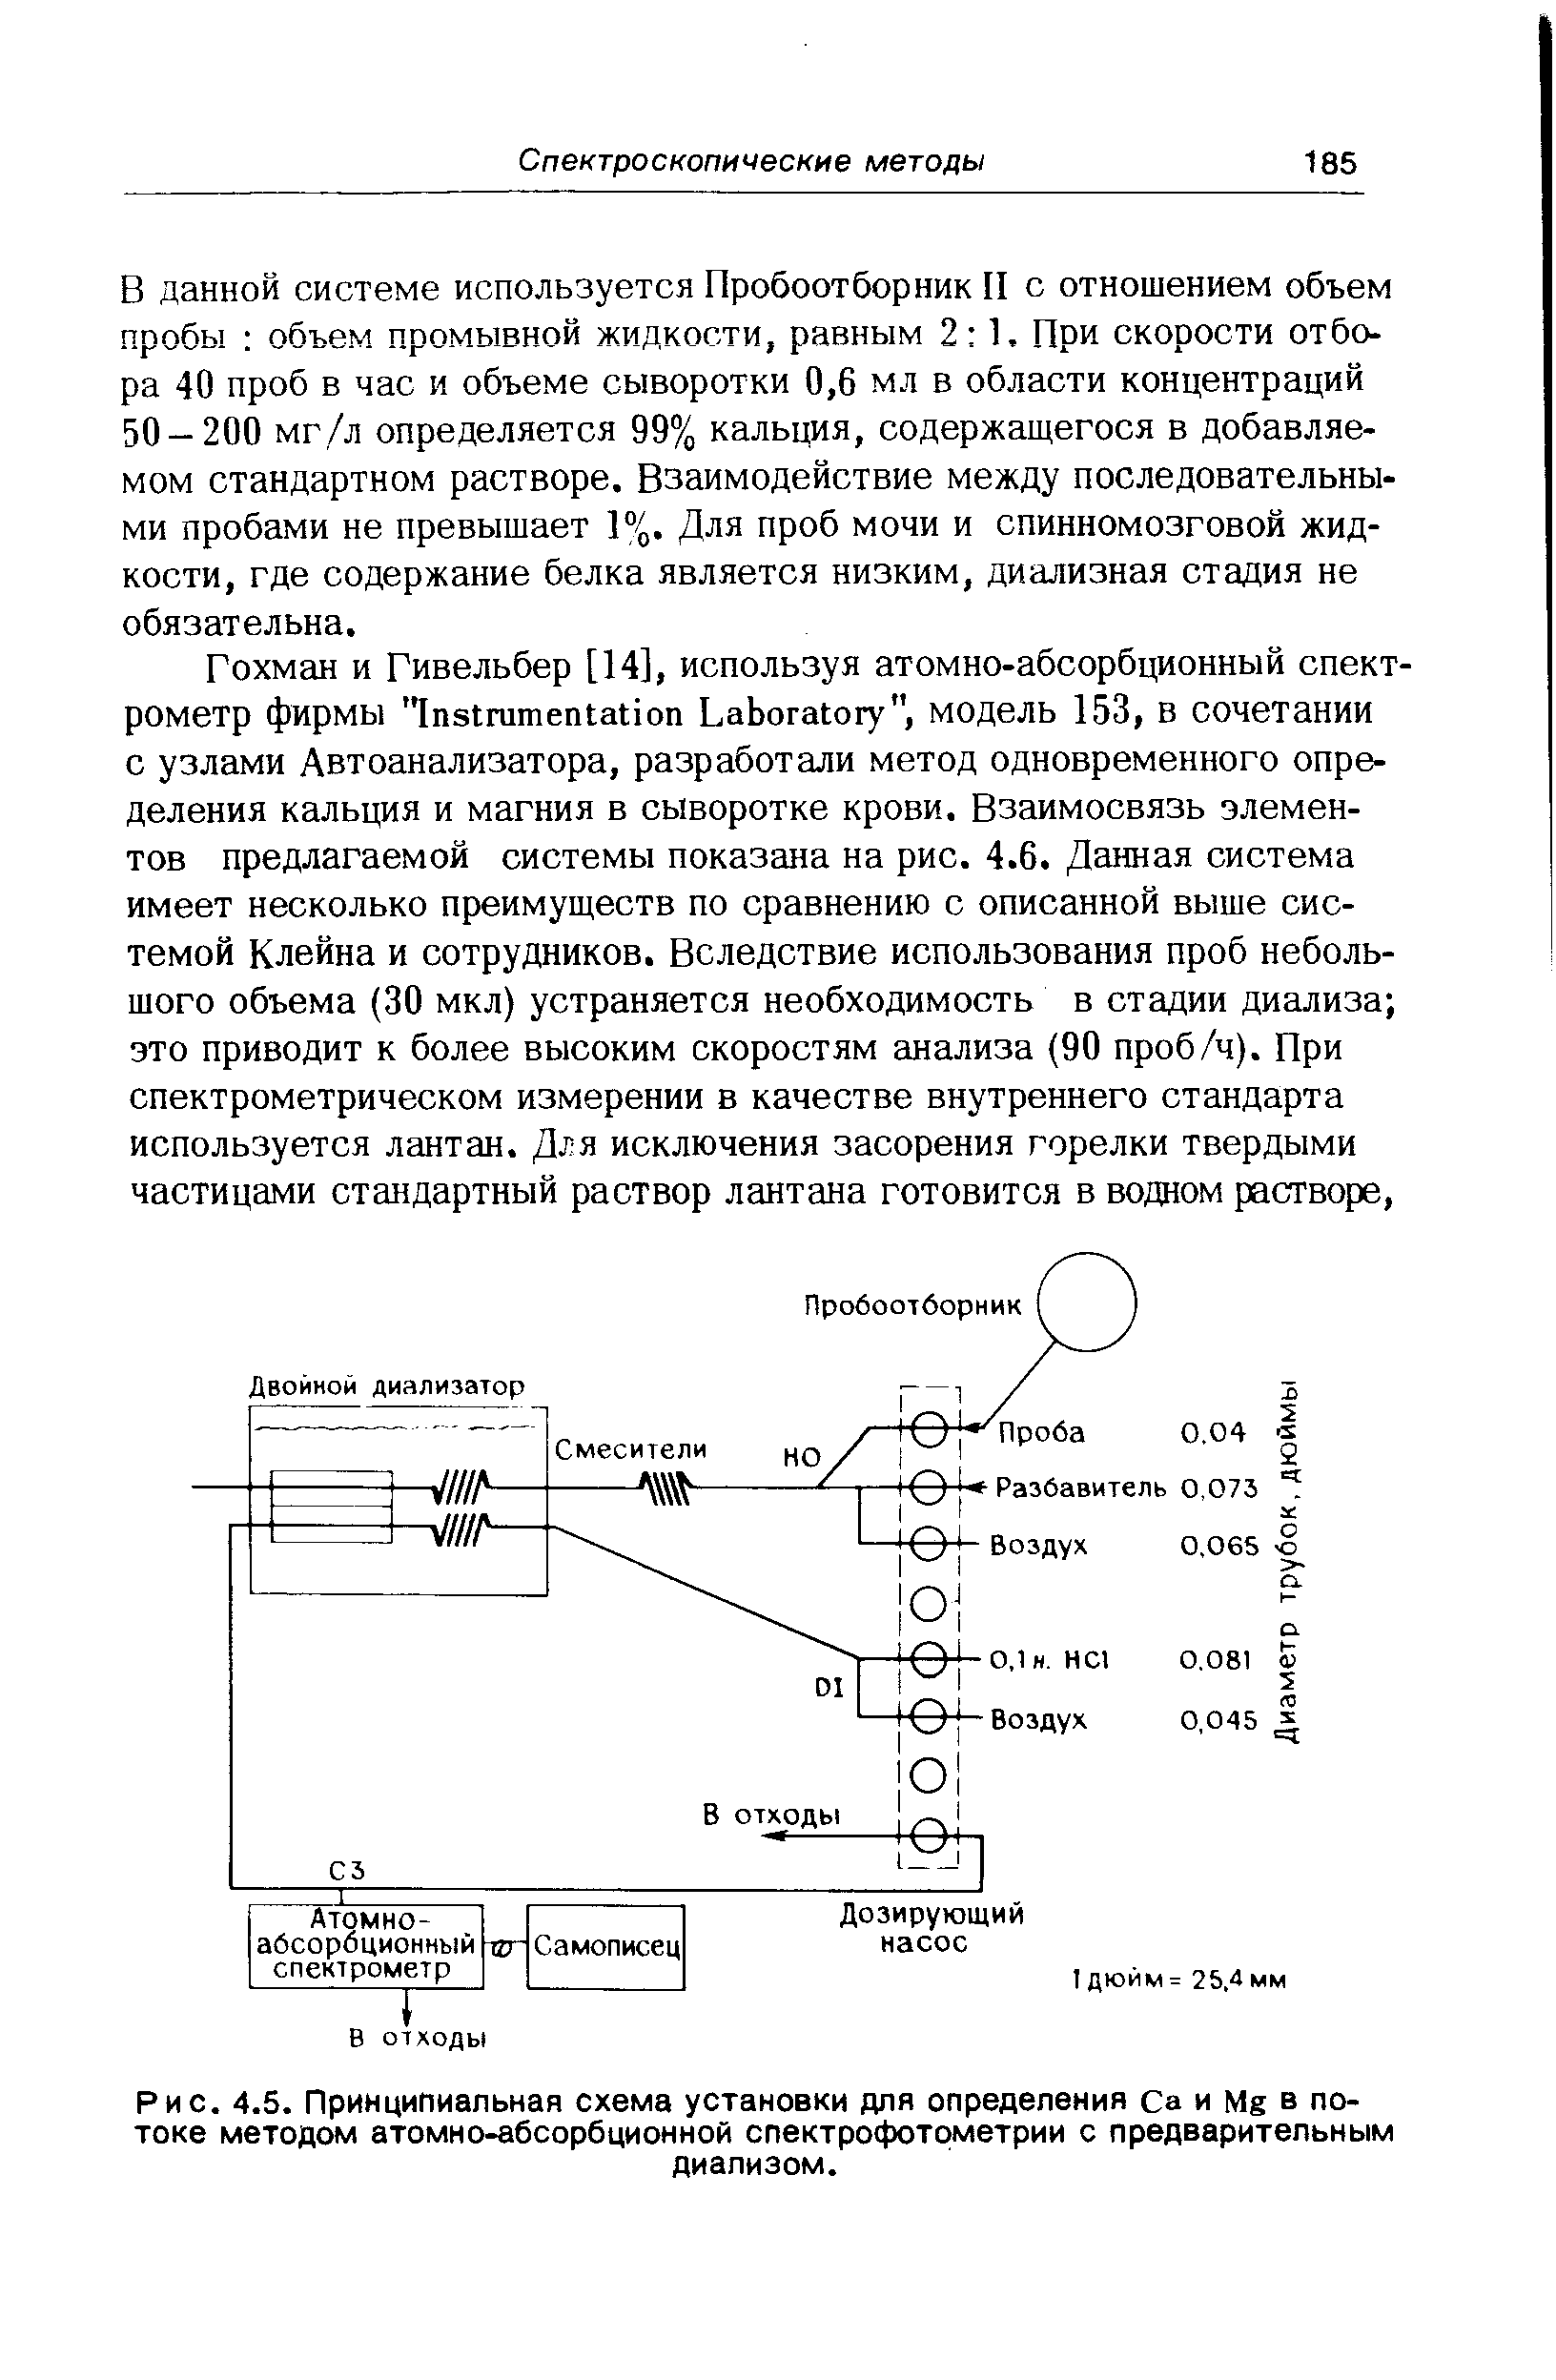 Рис. 4.5. Принципиальная схема установки для определения Са и Мг в потоке методом атомно-абсорбционной спектрофотометрии с предварительным диализом.